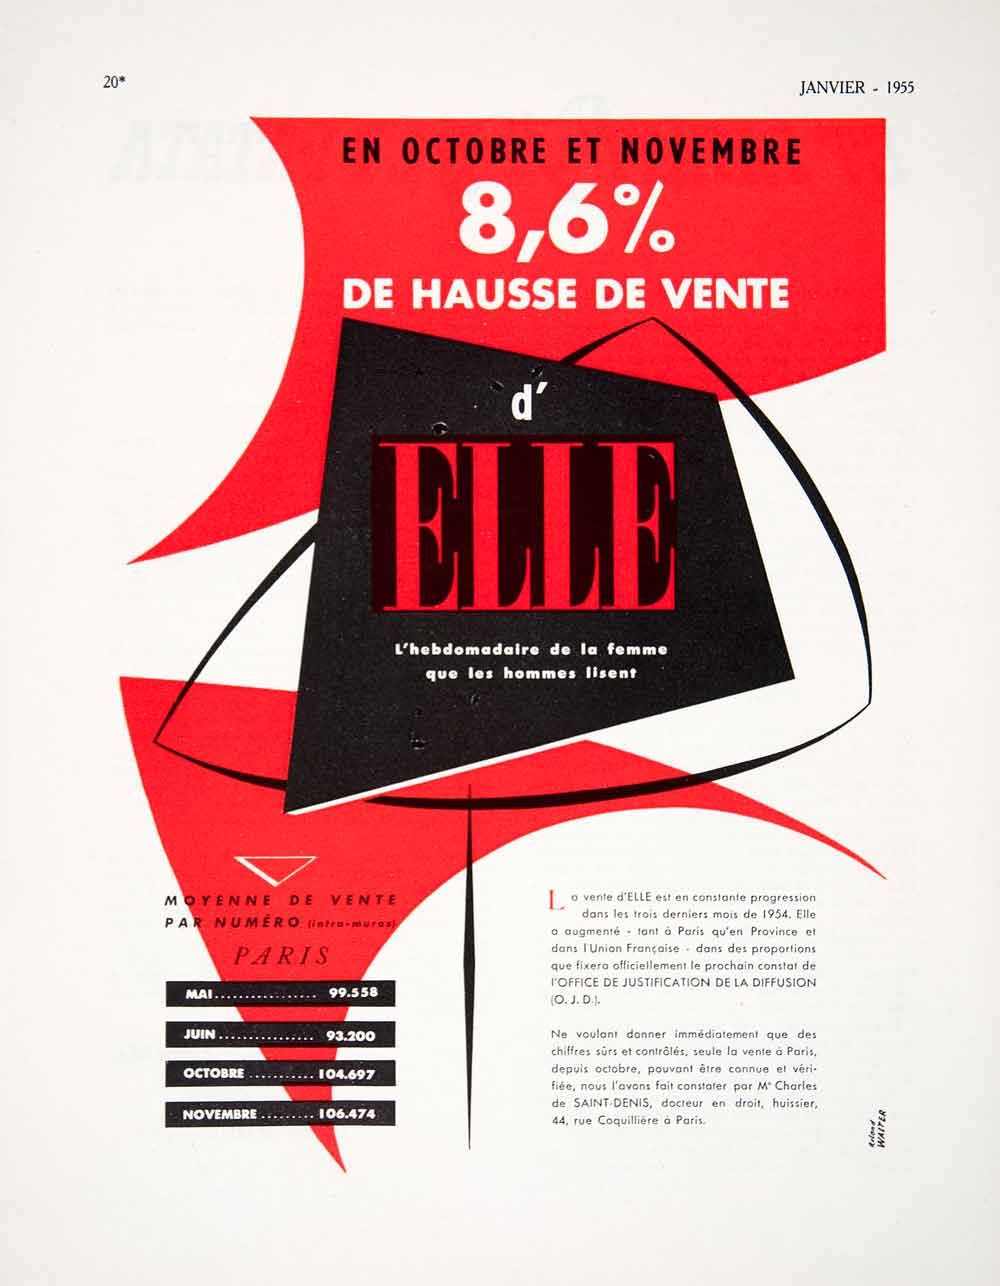 1955 Ad Paris France Saint-Denis French Advertisement d'Elle Roland Walter VEN2